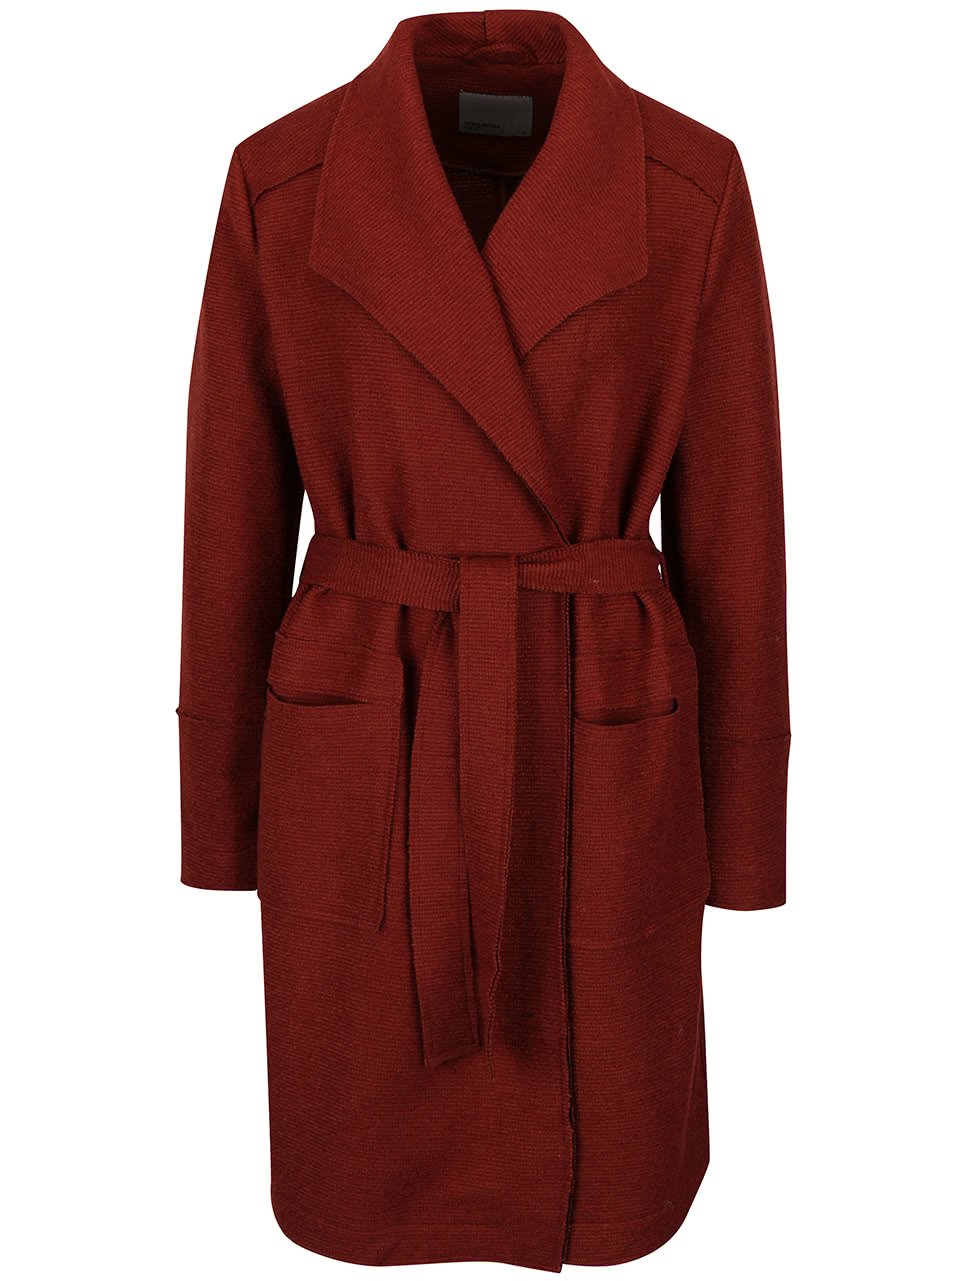 Cihlový lehký žebrovaný kabát Vero Moda Sabrina